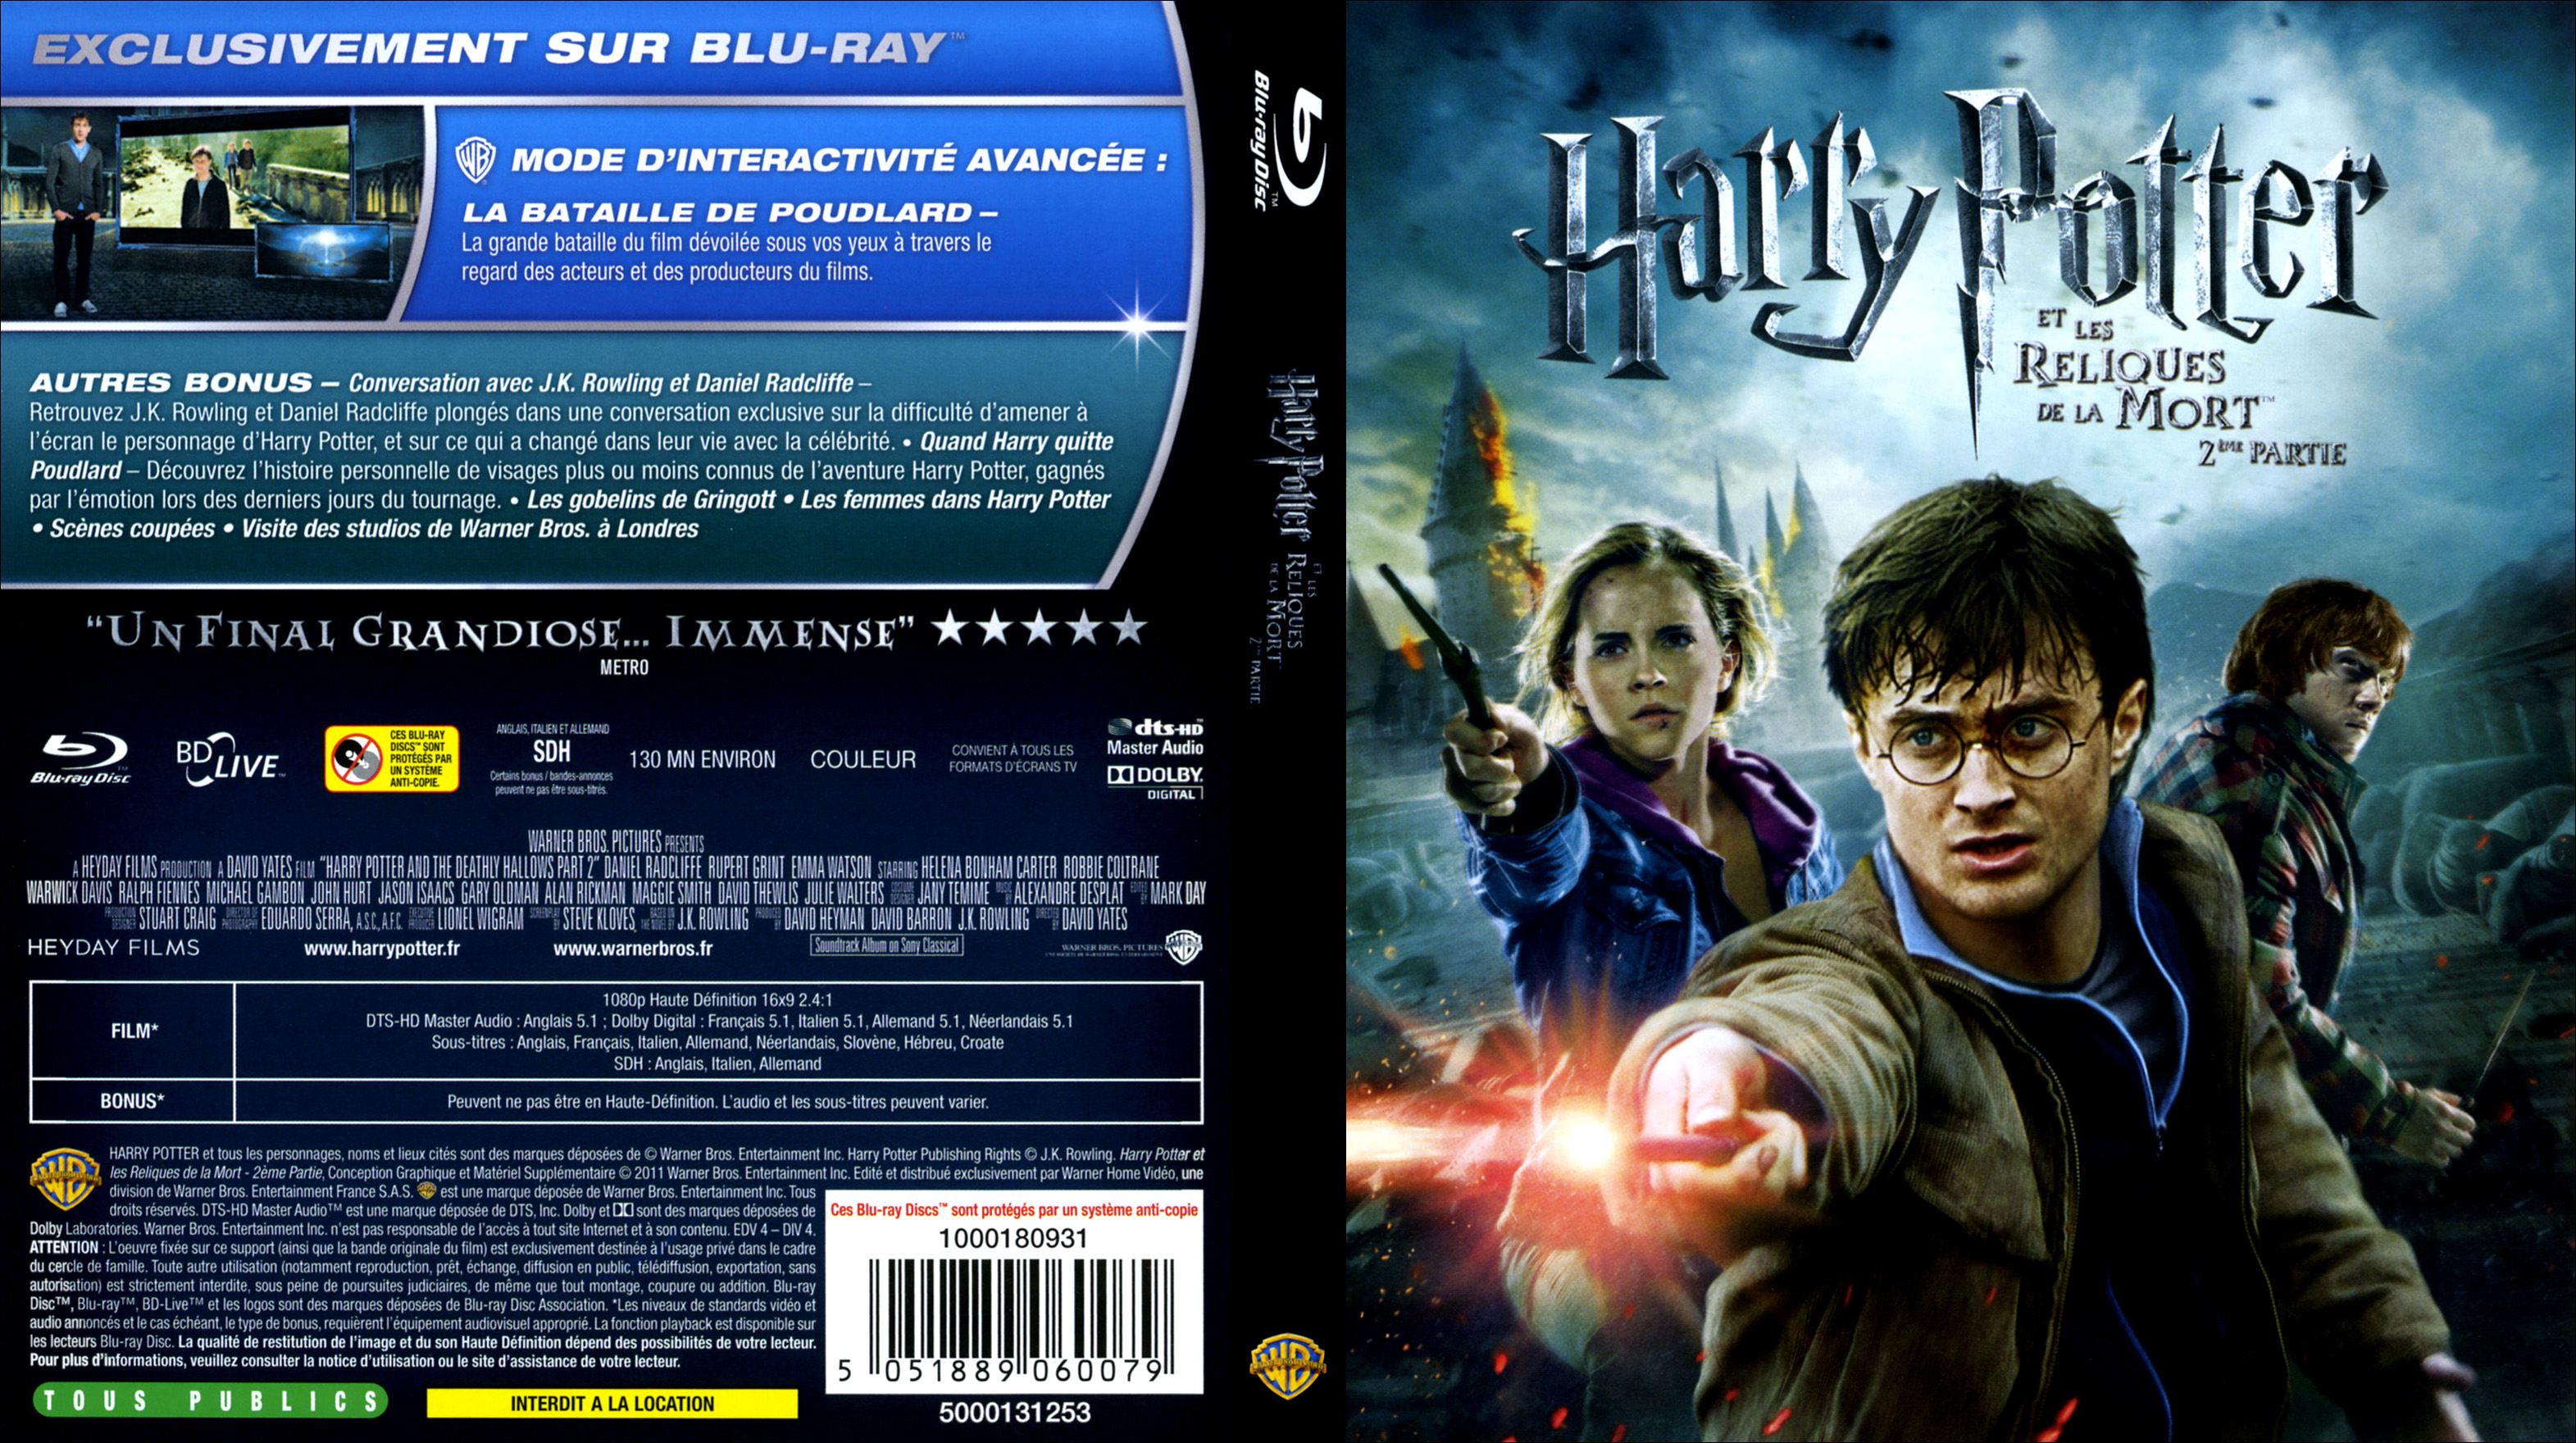 Jaquette DVD Harry Potter et les reliques de la mort - 2me partie (BLU-RAY) v2